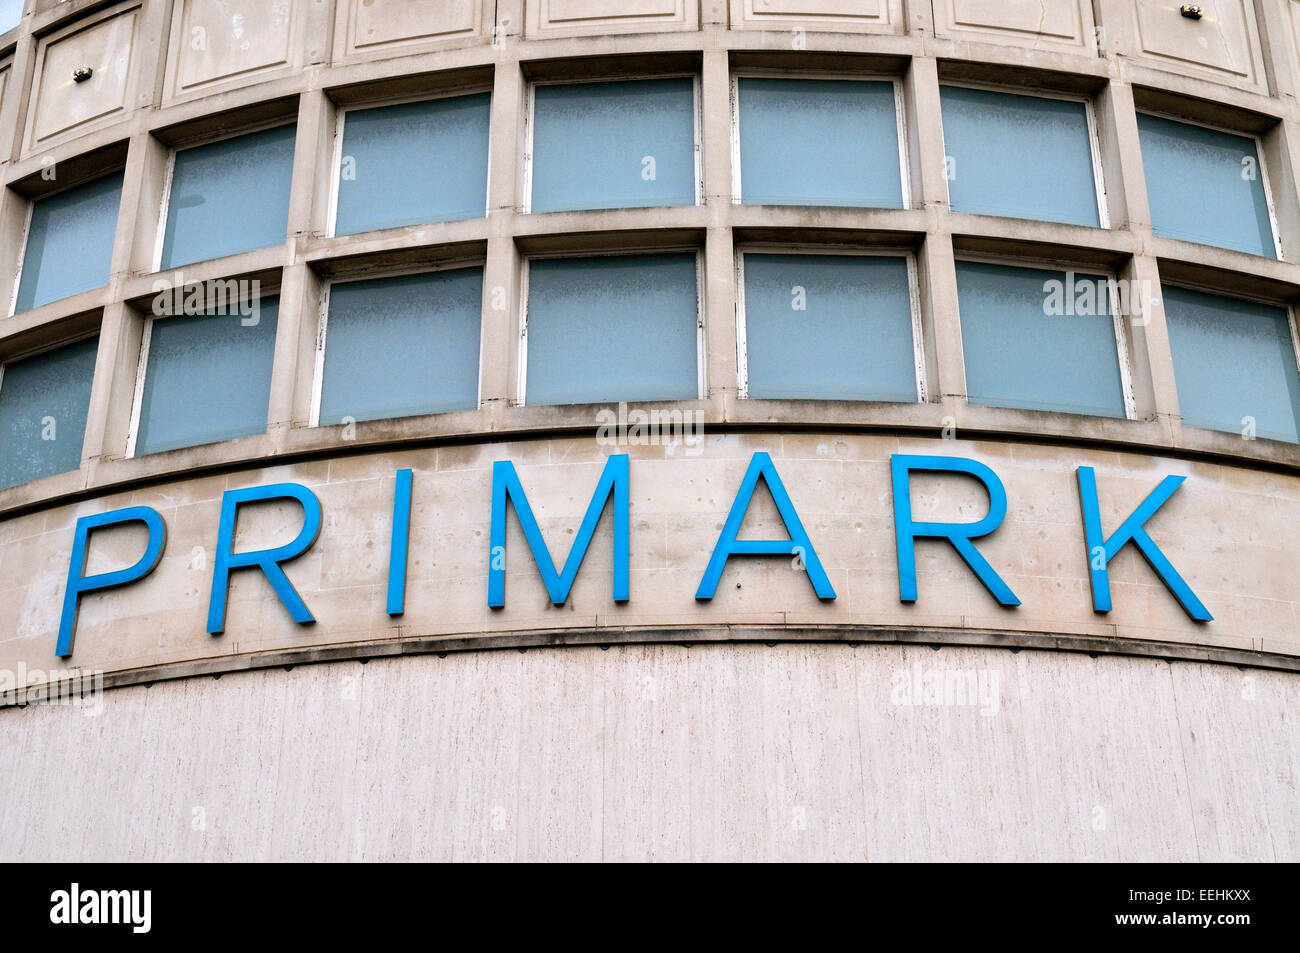 Primark-Filiale und Zeichen, Broadmead Bristol, UK Stockfoto